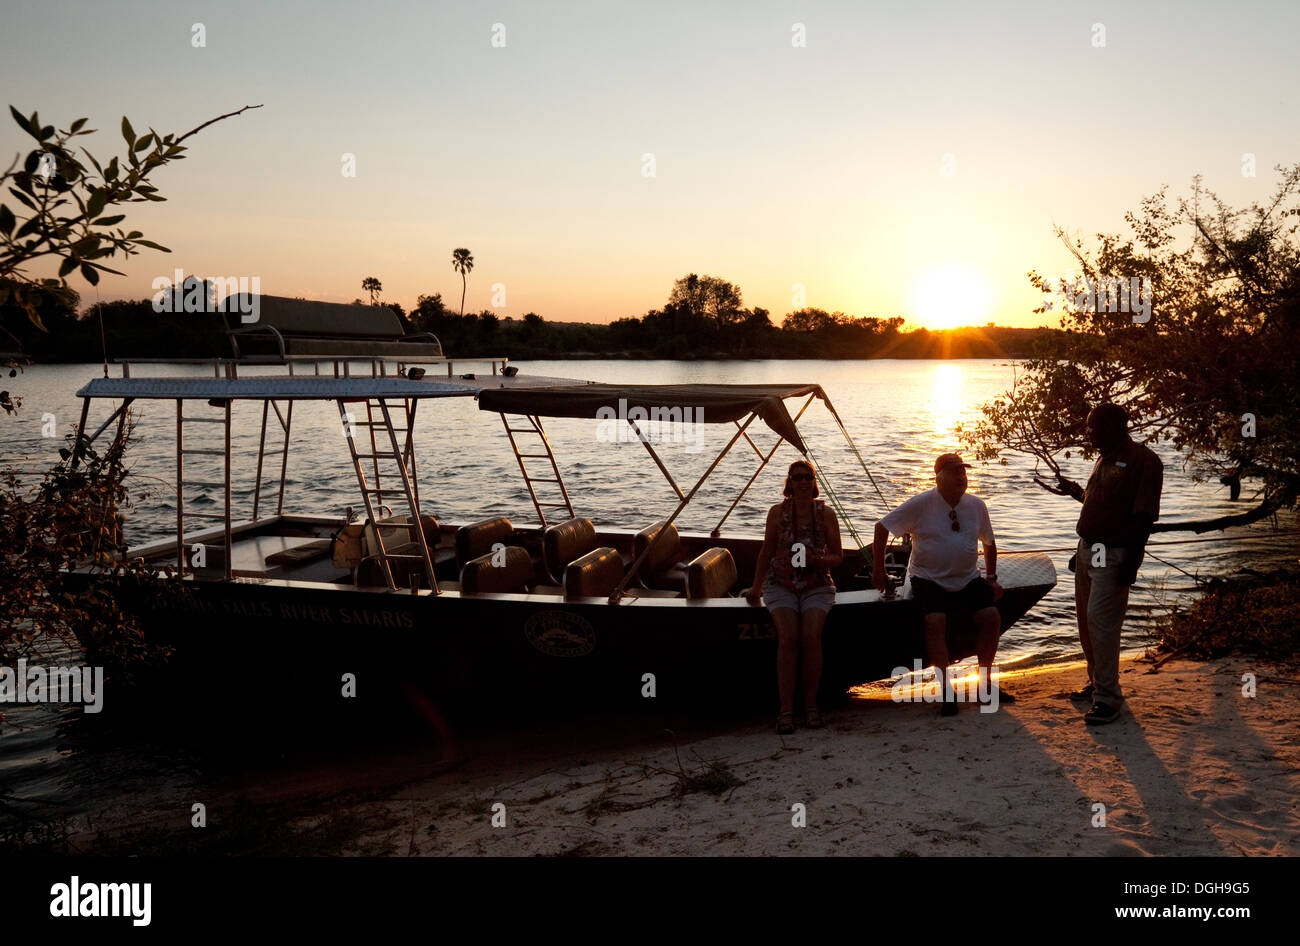 La rivière Zambezi safari croisière au coucher du soleil, la Zambie, l'Afrique Banque D'Images